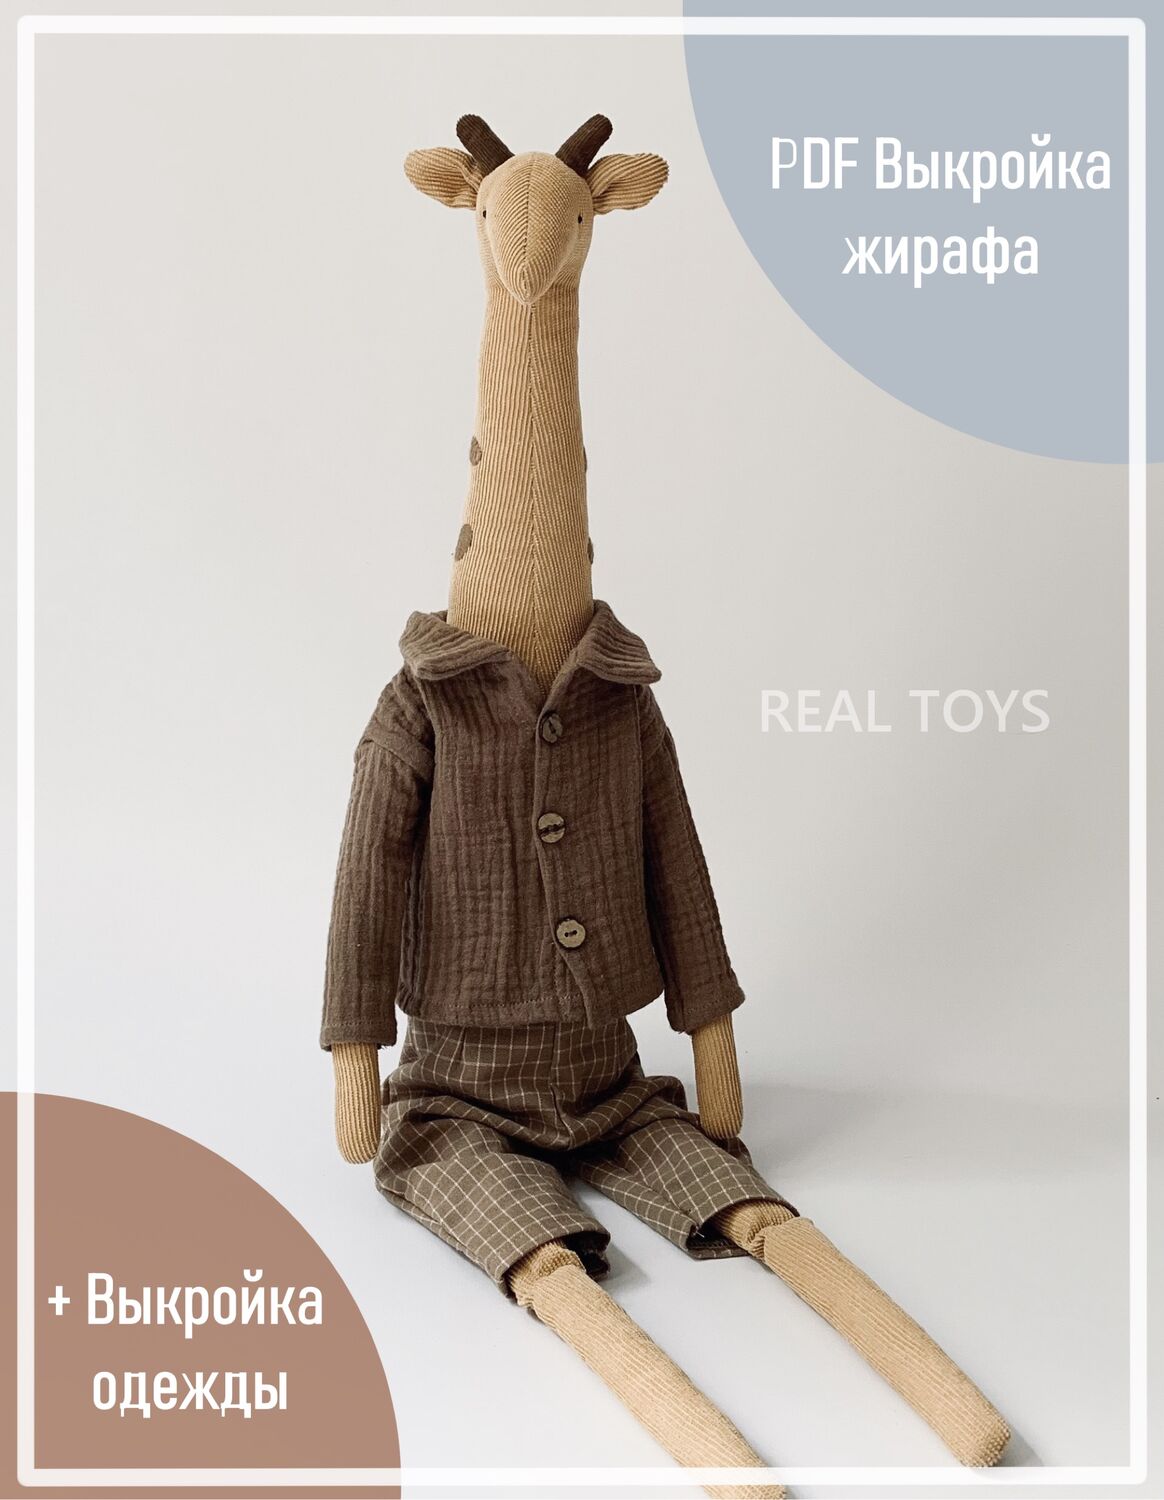 Выкройки мягких игрушек - обалденные жирафики